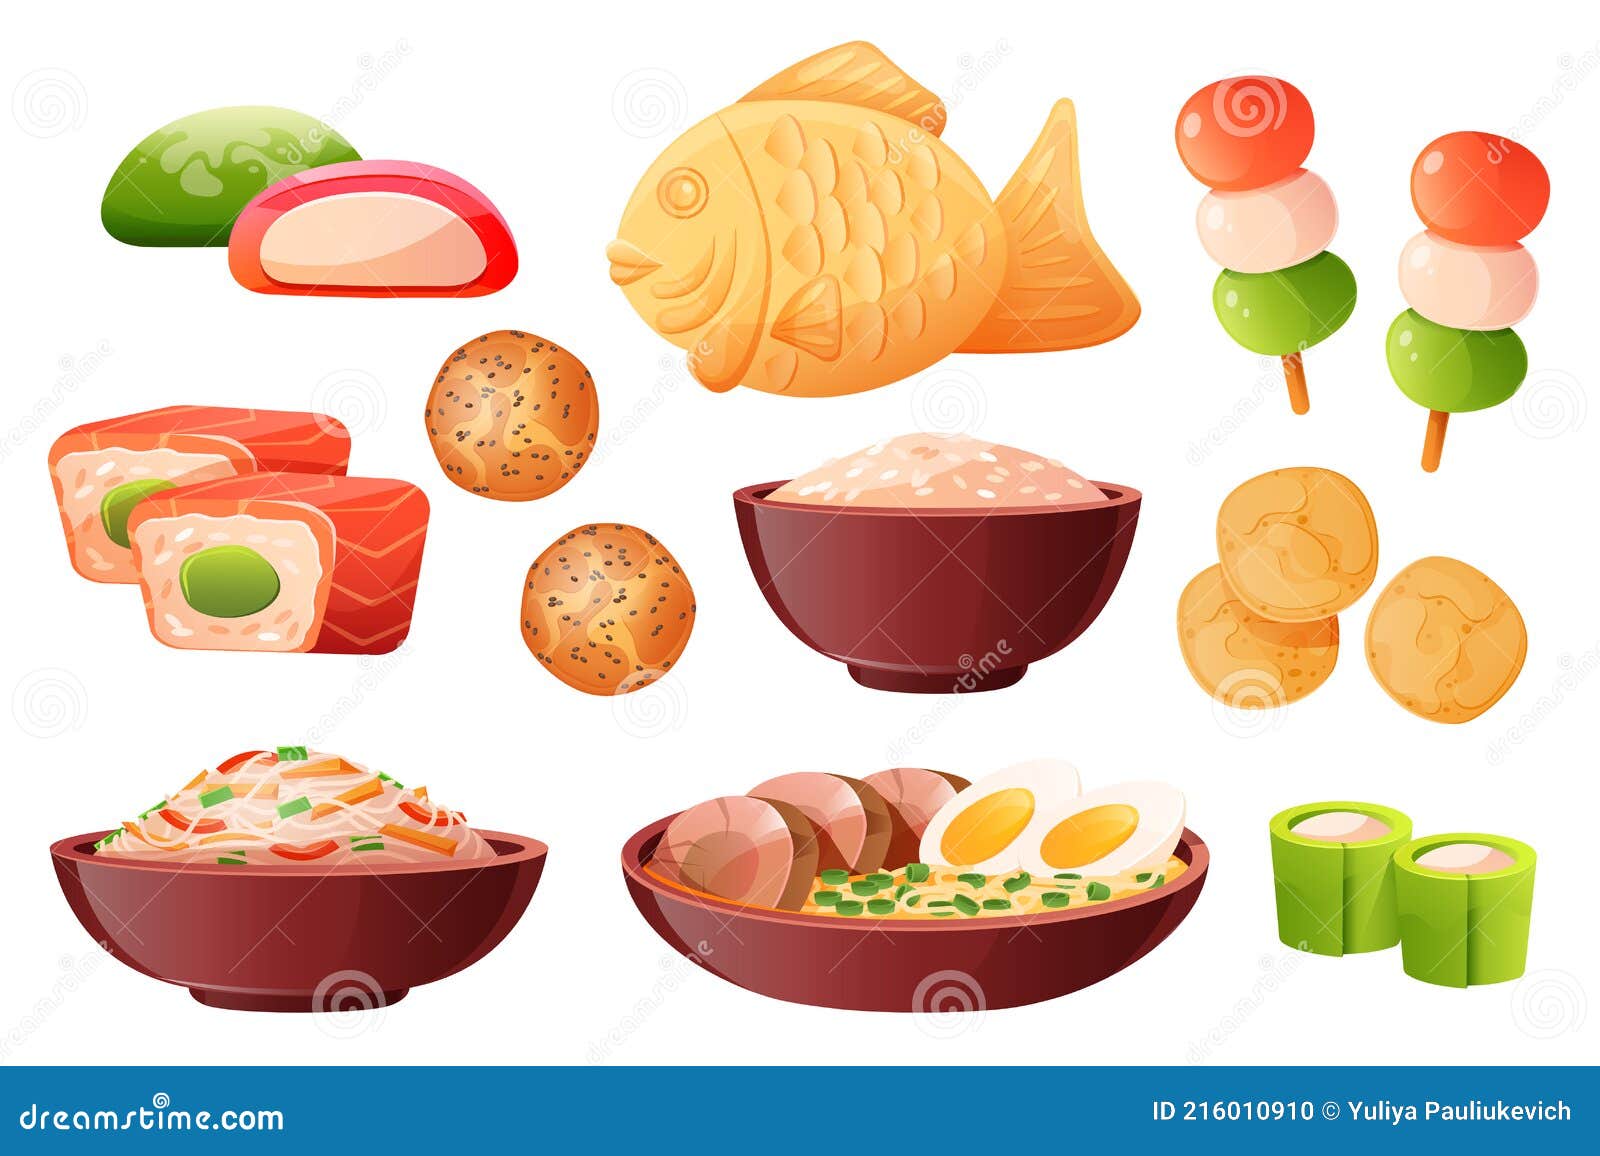 https://thumbs.dreamstime.com/z/comida-japonesa-arroz-en-bowl-sushi-y-ramen-taz%C3%B3n-sopa-con-fideos-huevos-tradicional-cocinada-vector-de-dibujos-animados-conjunto-216010910.jpg